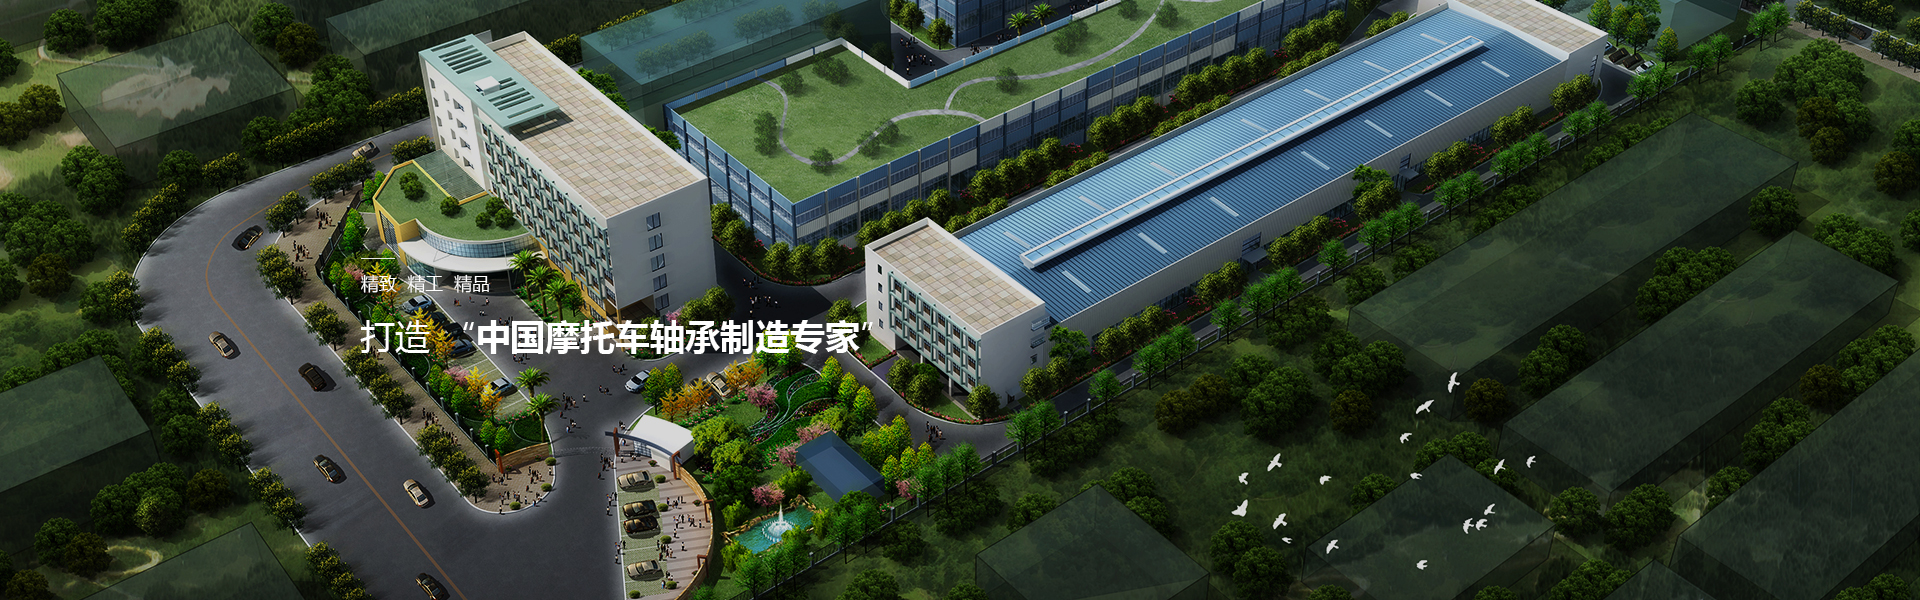 重庆市新超力轴承有限公司 环境照片活动图片